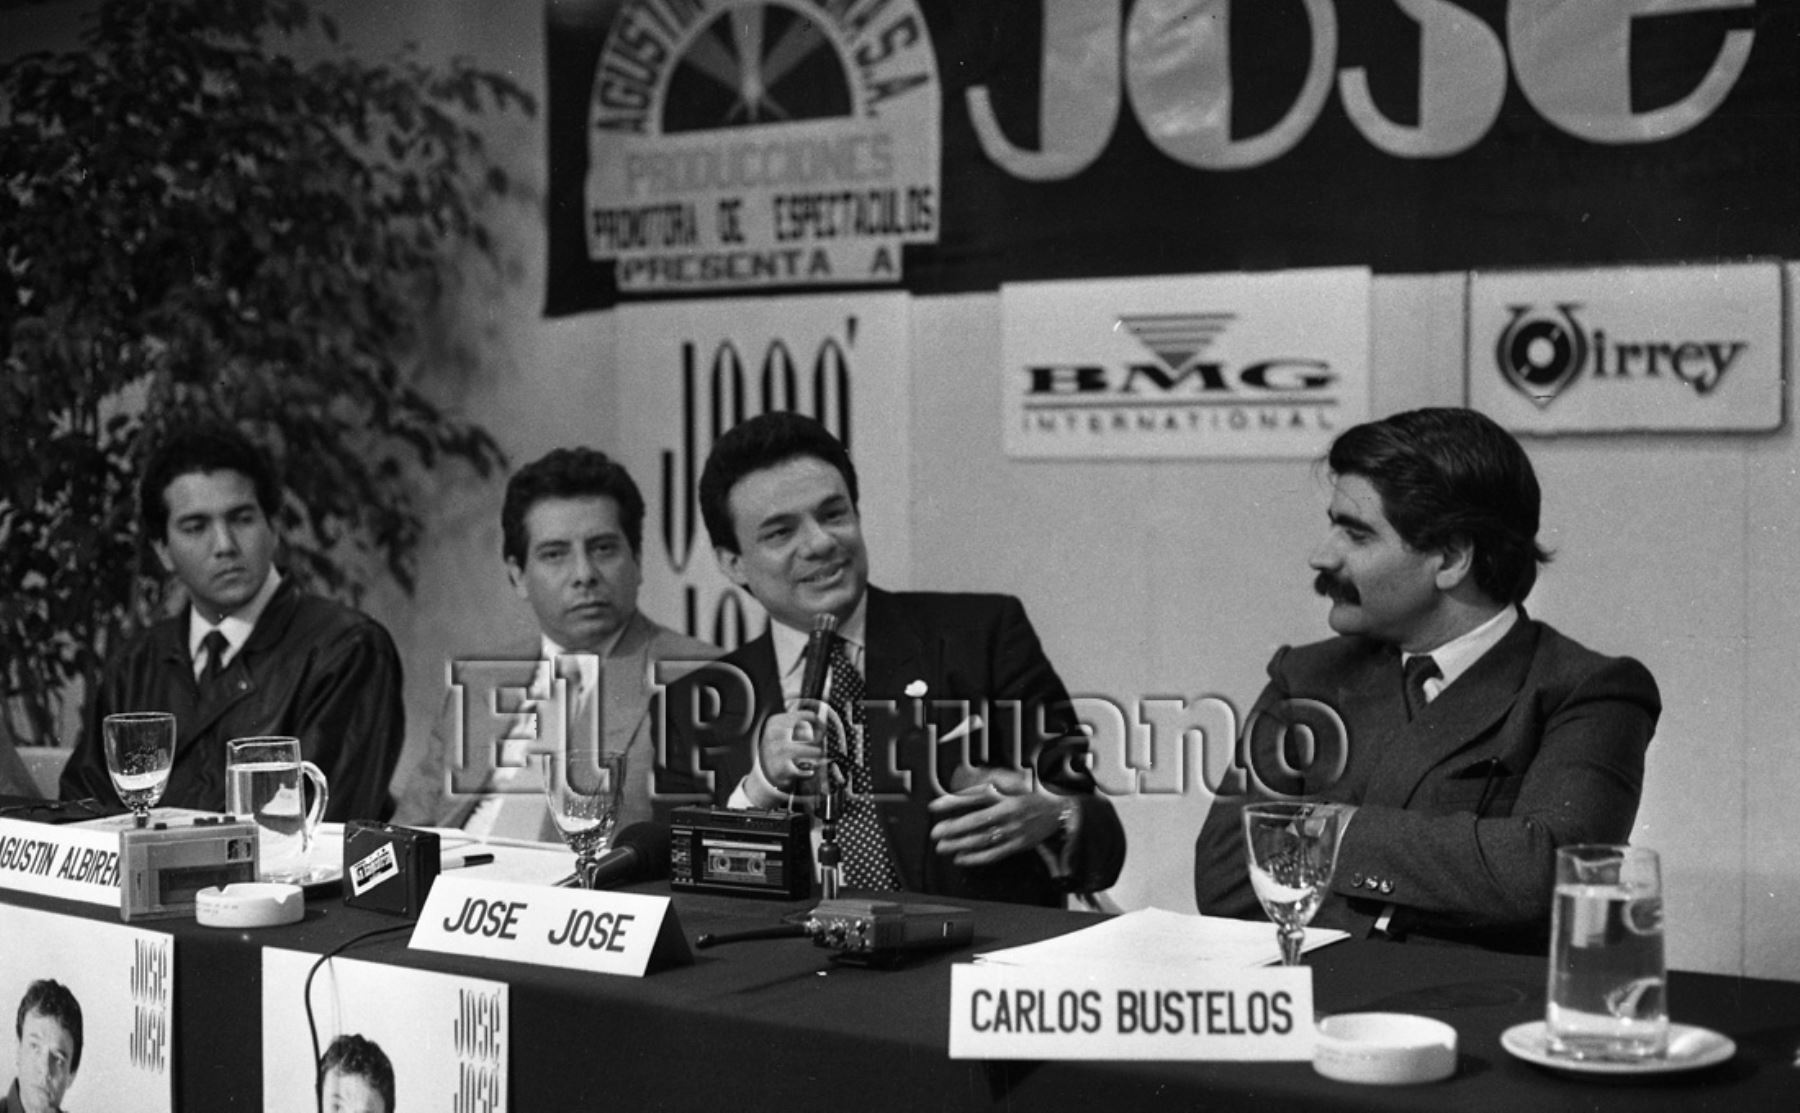 Lima - 29 junio 1980 / José José el baladista mexicano permaneció cuarenta minutos en nuestro primer aeropuerto mientras esperaba la salida del avión que lo conduciría a Chile. Foto:Archivo Histórico EL PERUANO